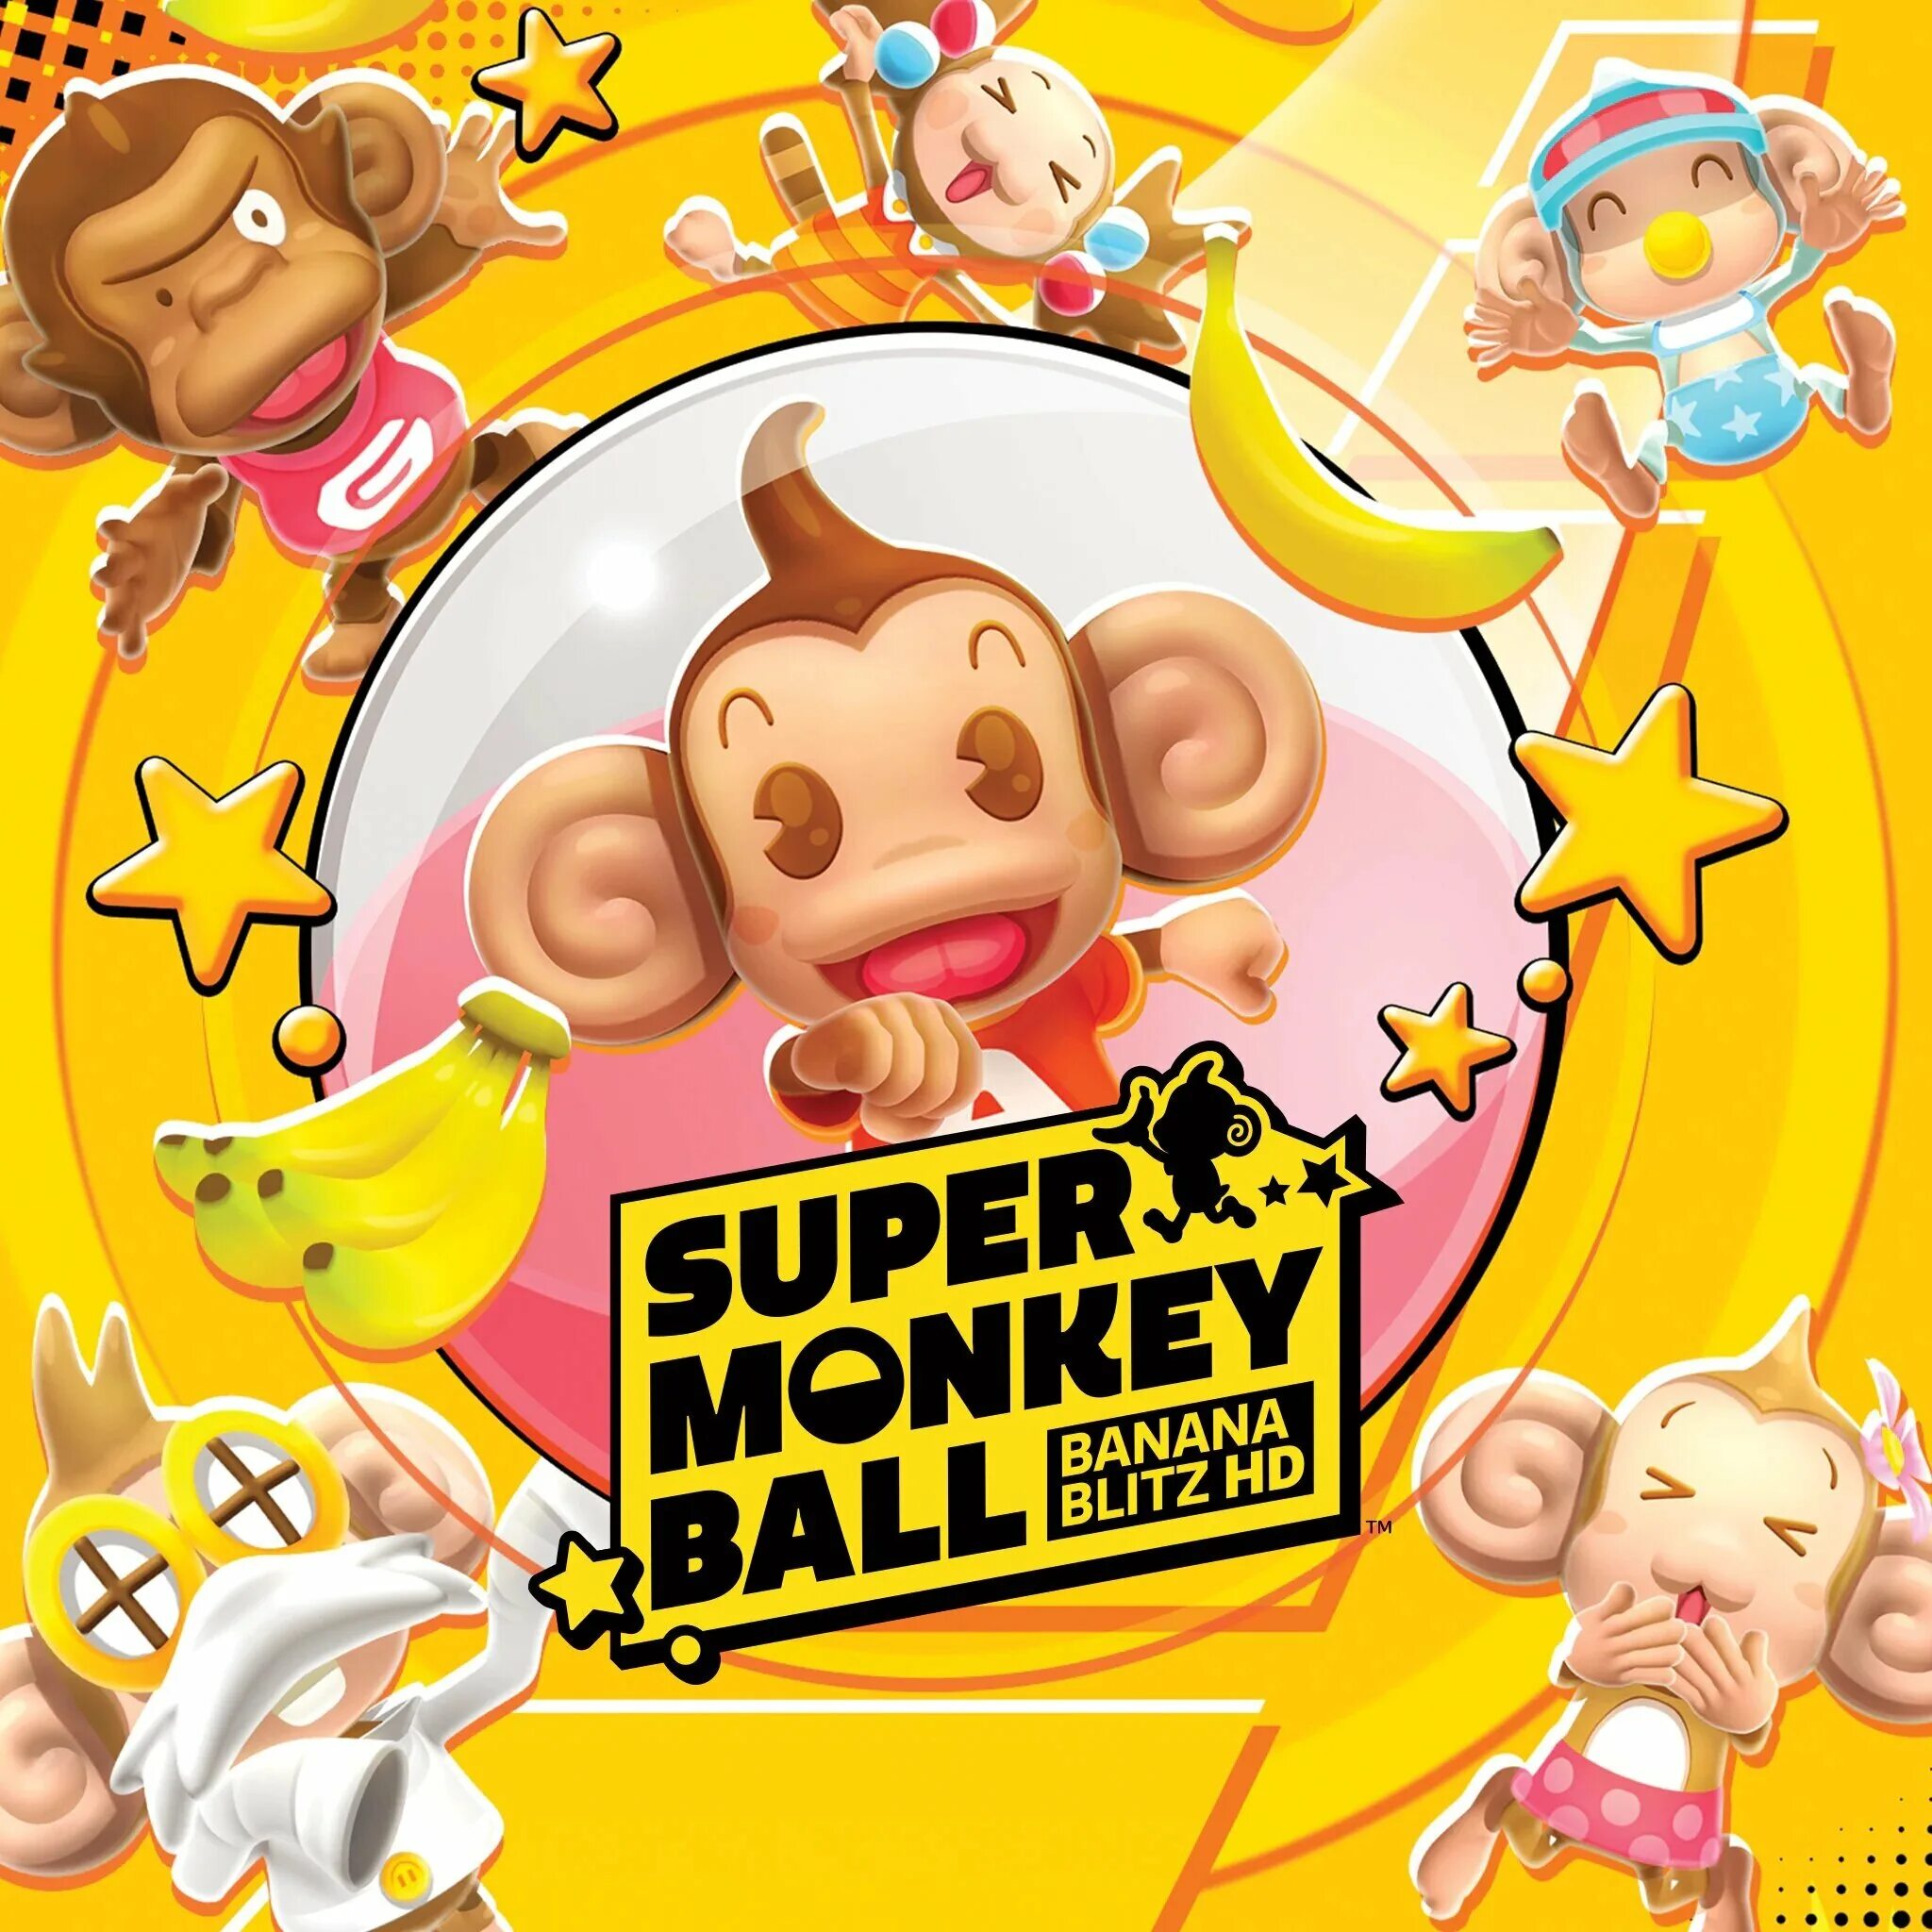 Super monkey ball banana. Super Monkey Ball: Banana Blitz. Super macloid Ball Banana Blitz. Super Monkeys игра.